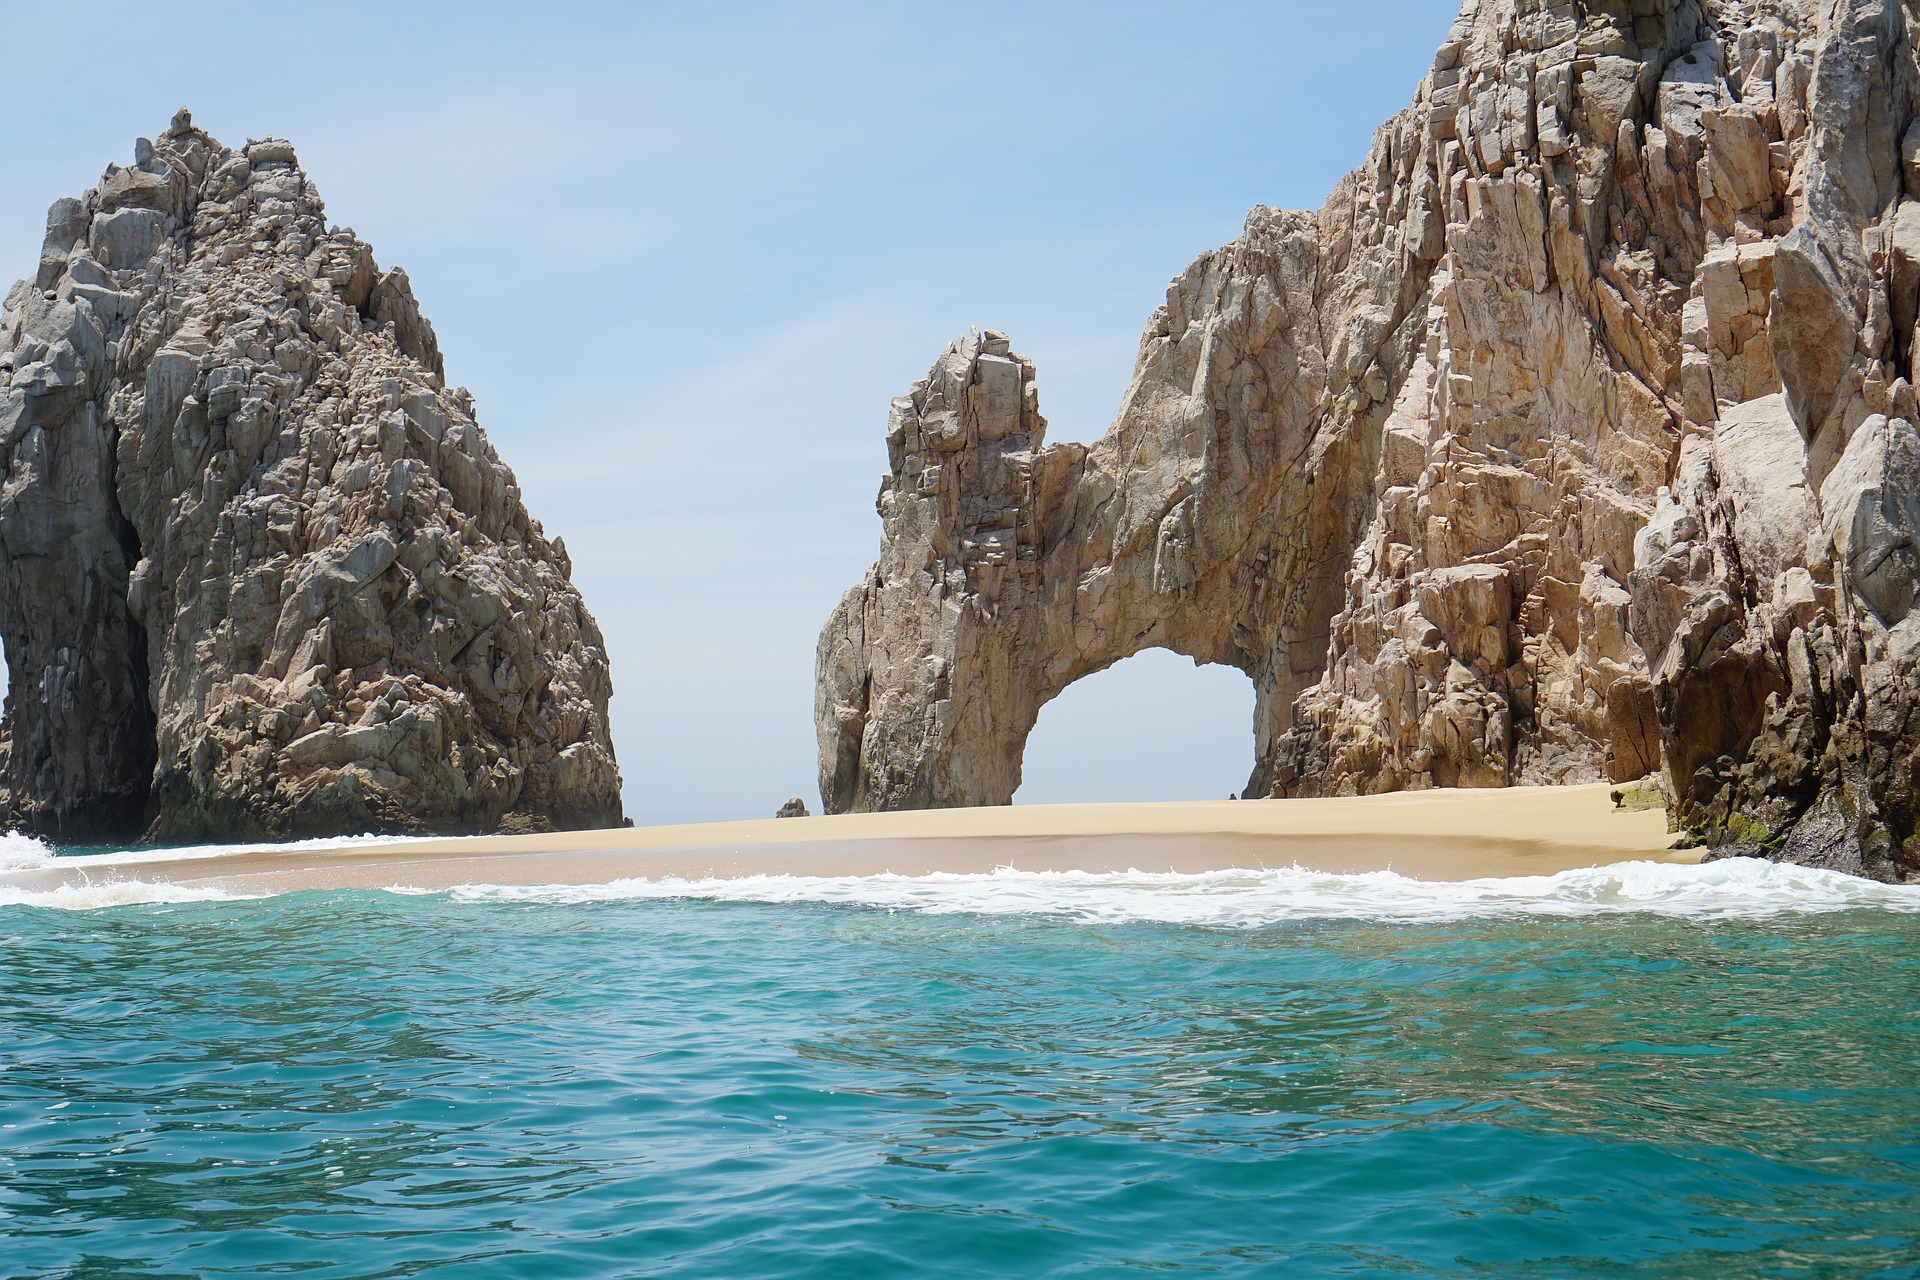 Los Cabos, Baja California Sur, Mexico (Photo Credit: Salvador Navarro Maldonado from Pixabay)